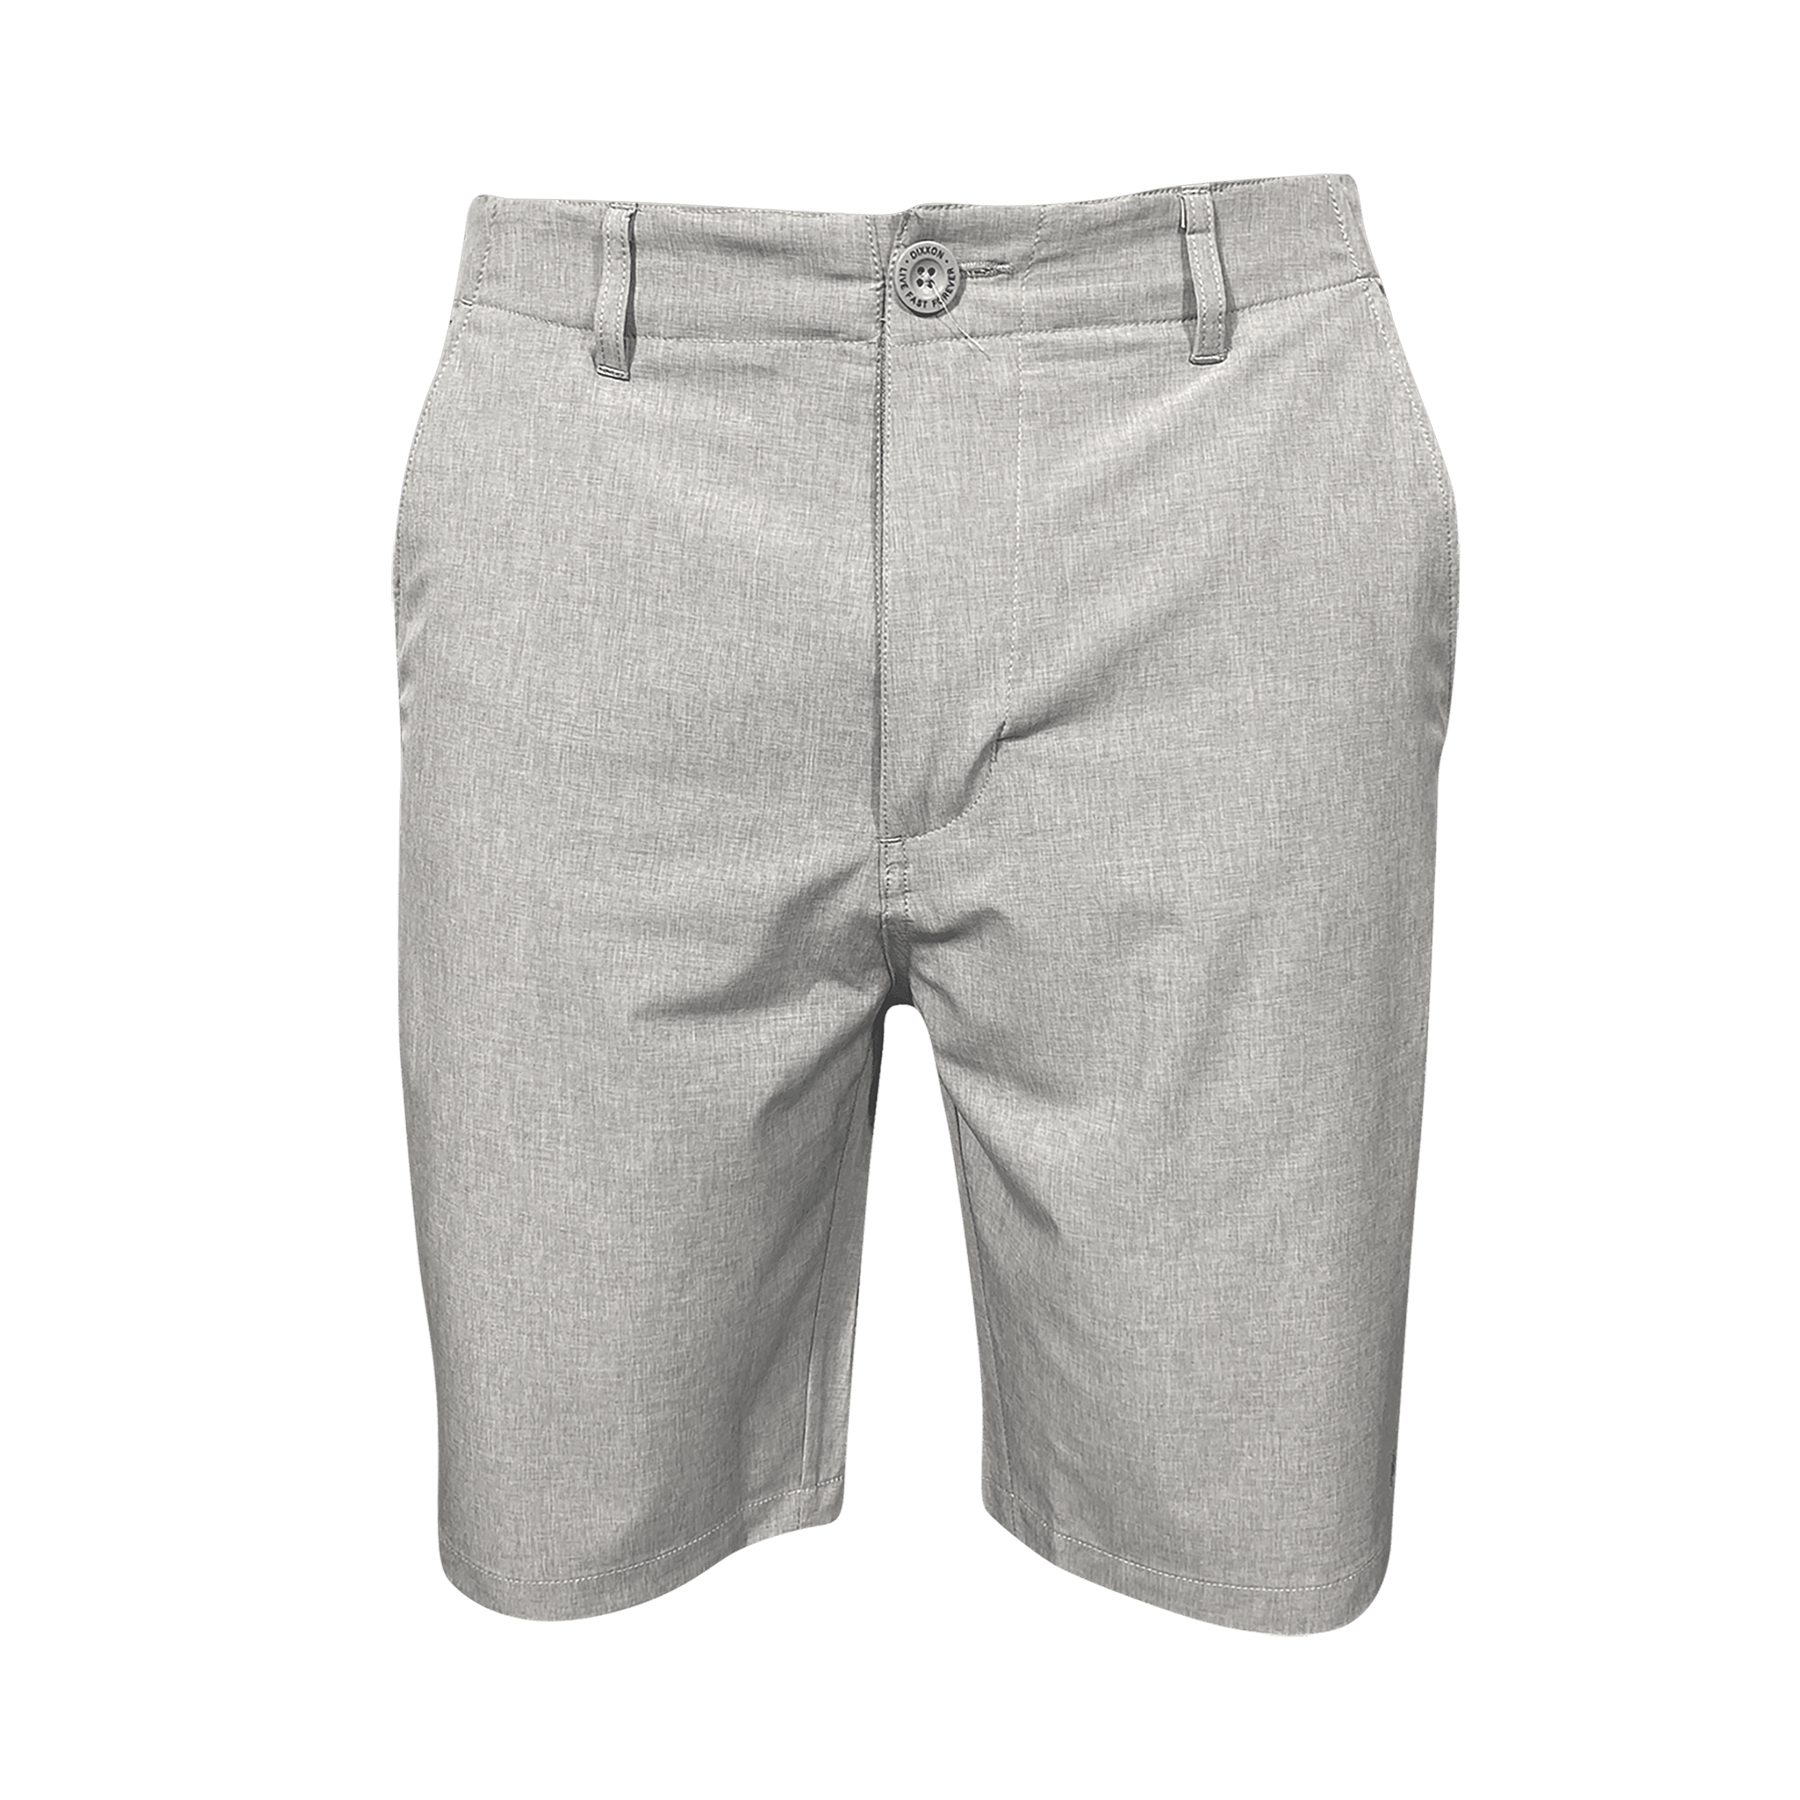 Dixxon Hybrid Shorts - Light Grey | Dixxon Flannel Co.